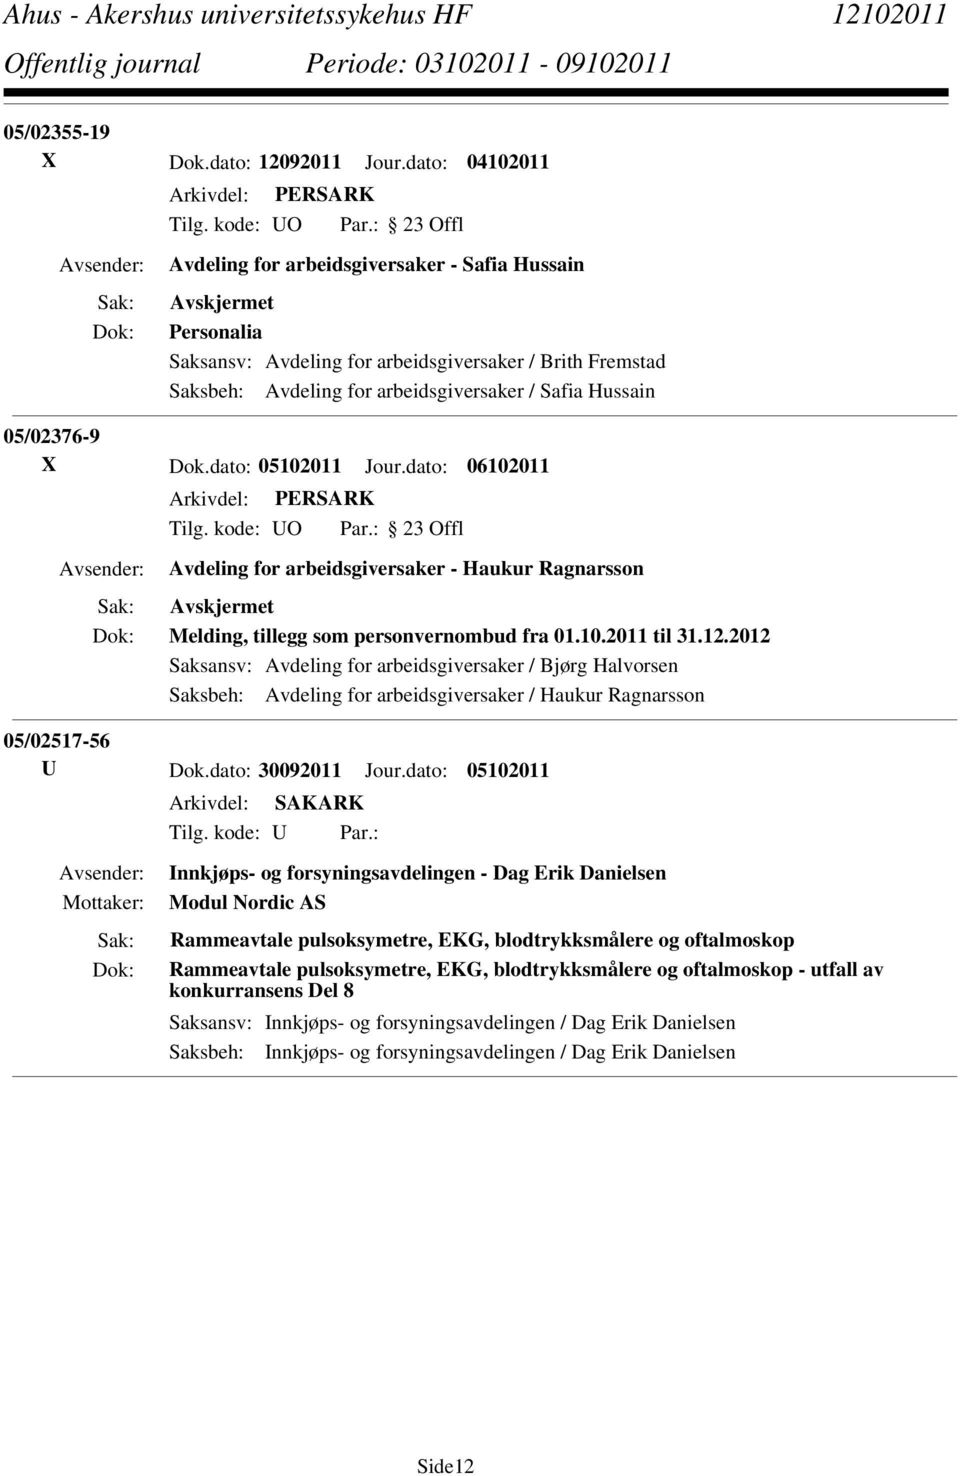 Dok.dato: 05102011 Jour.dato: 06102011 Avdeling for arbeidsgiversaker - Haukur Ragnarsson Melding, tillegg som personvernombud fra 01.10.2011 til 31.12.